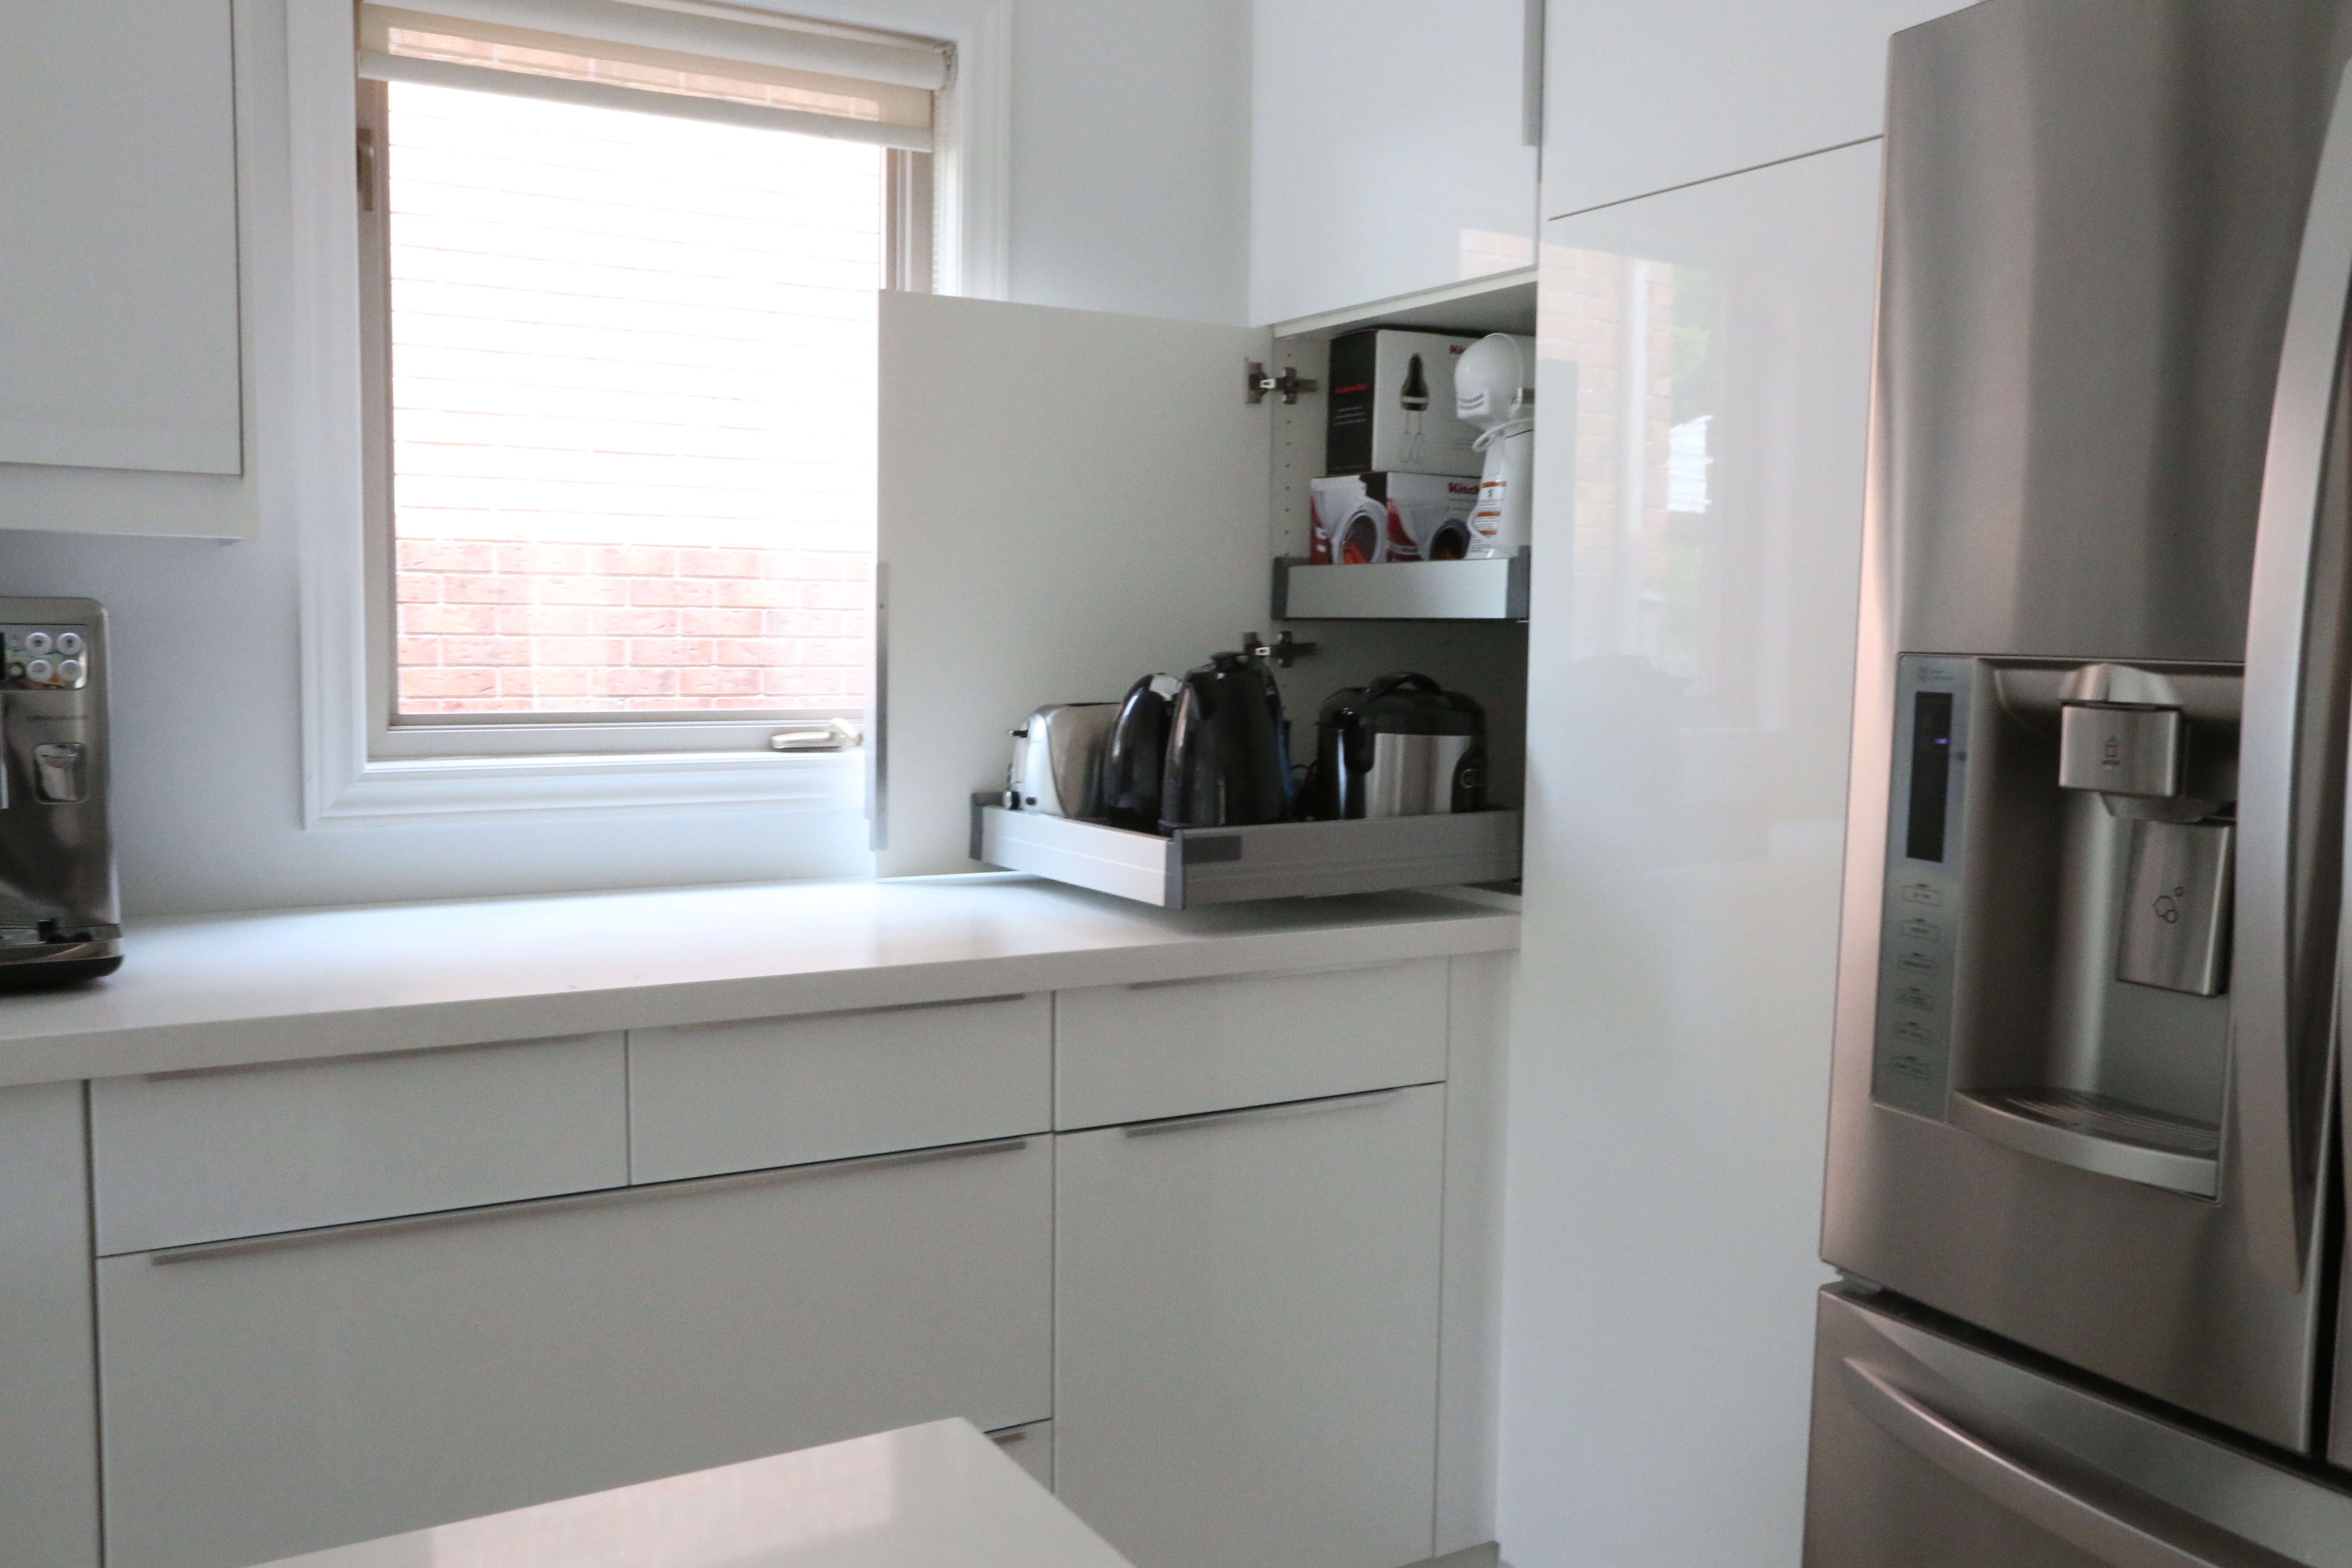 IKEA Hack Build Your Own Kitchen Appliance Garage